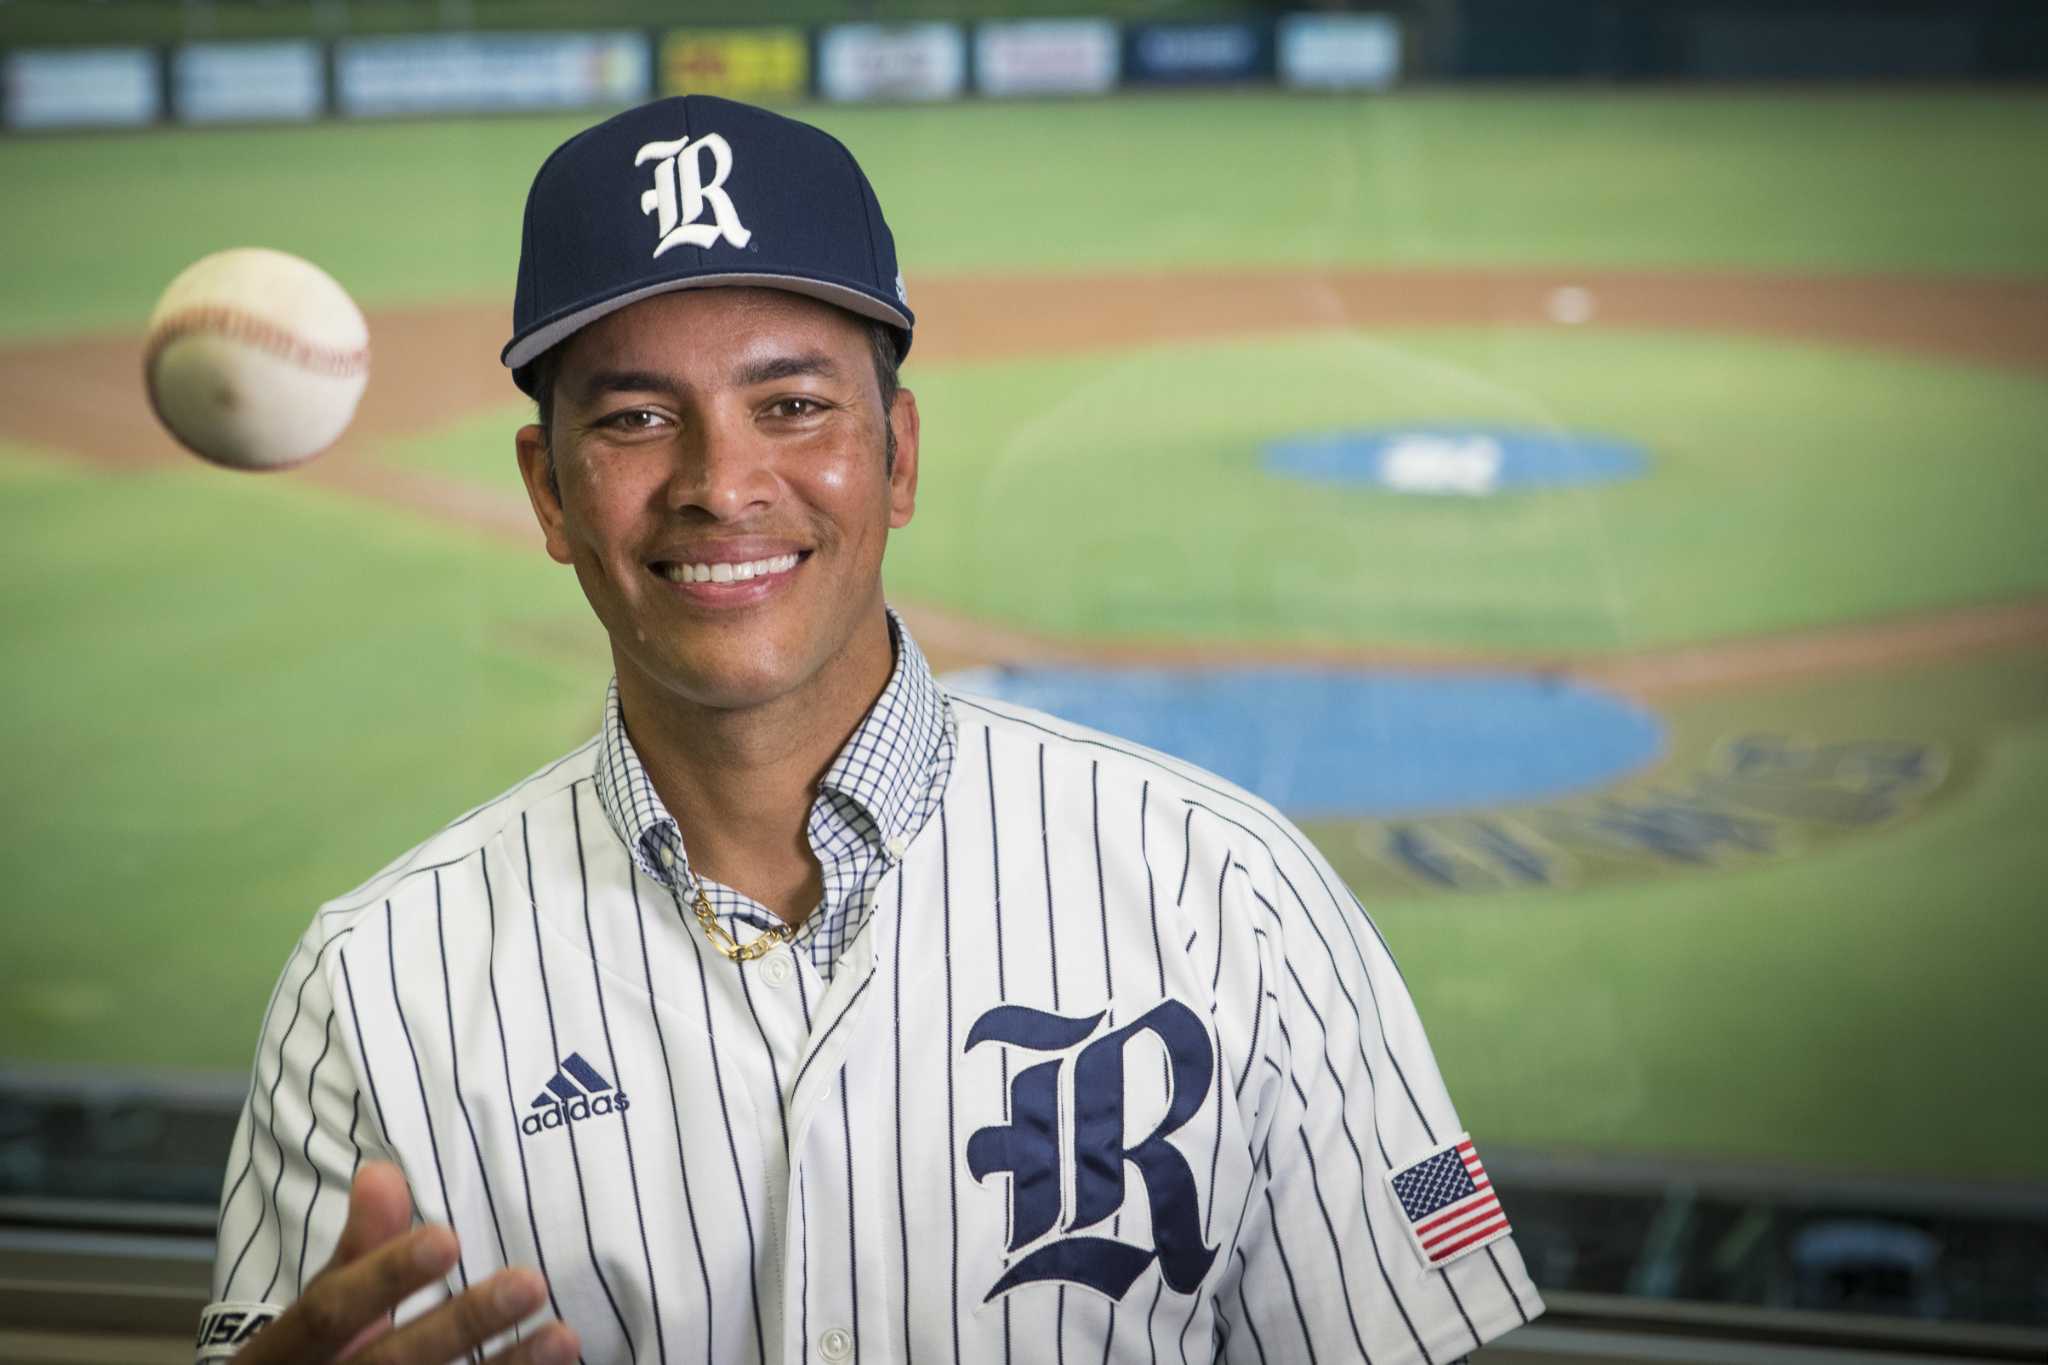 Jose Cruz Jr. aims to take Rice back to baseball pinnacle